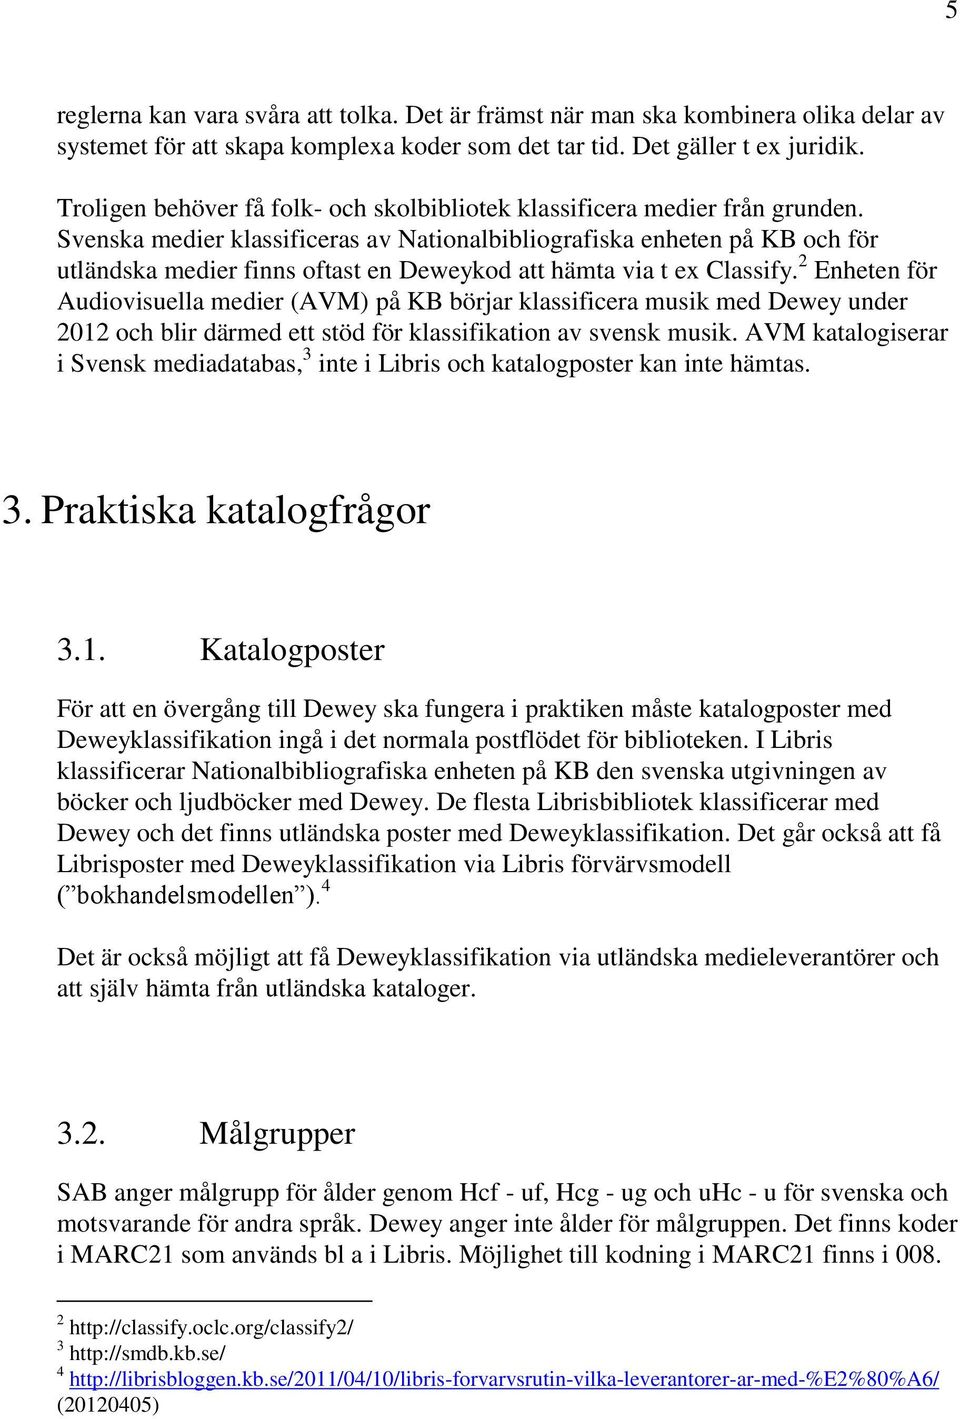 Svenska medier klassificeras av Nationalbibliografiska enheten på KB och för utländska medier finns oftast en Deweykod att hämta via t ex Classify.